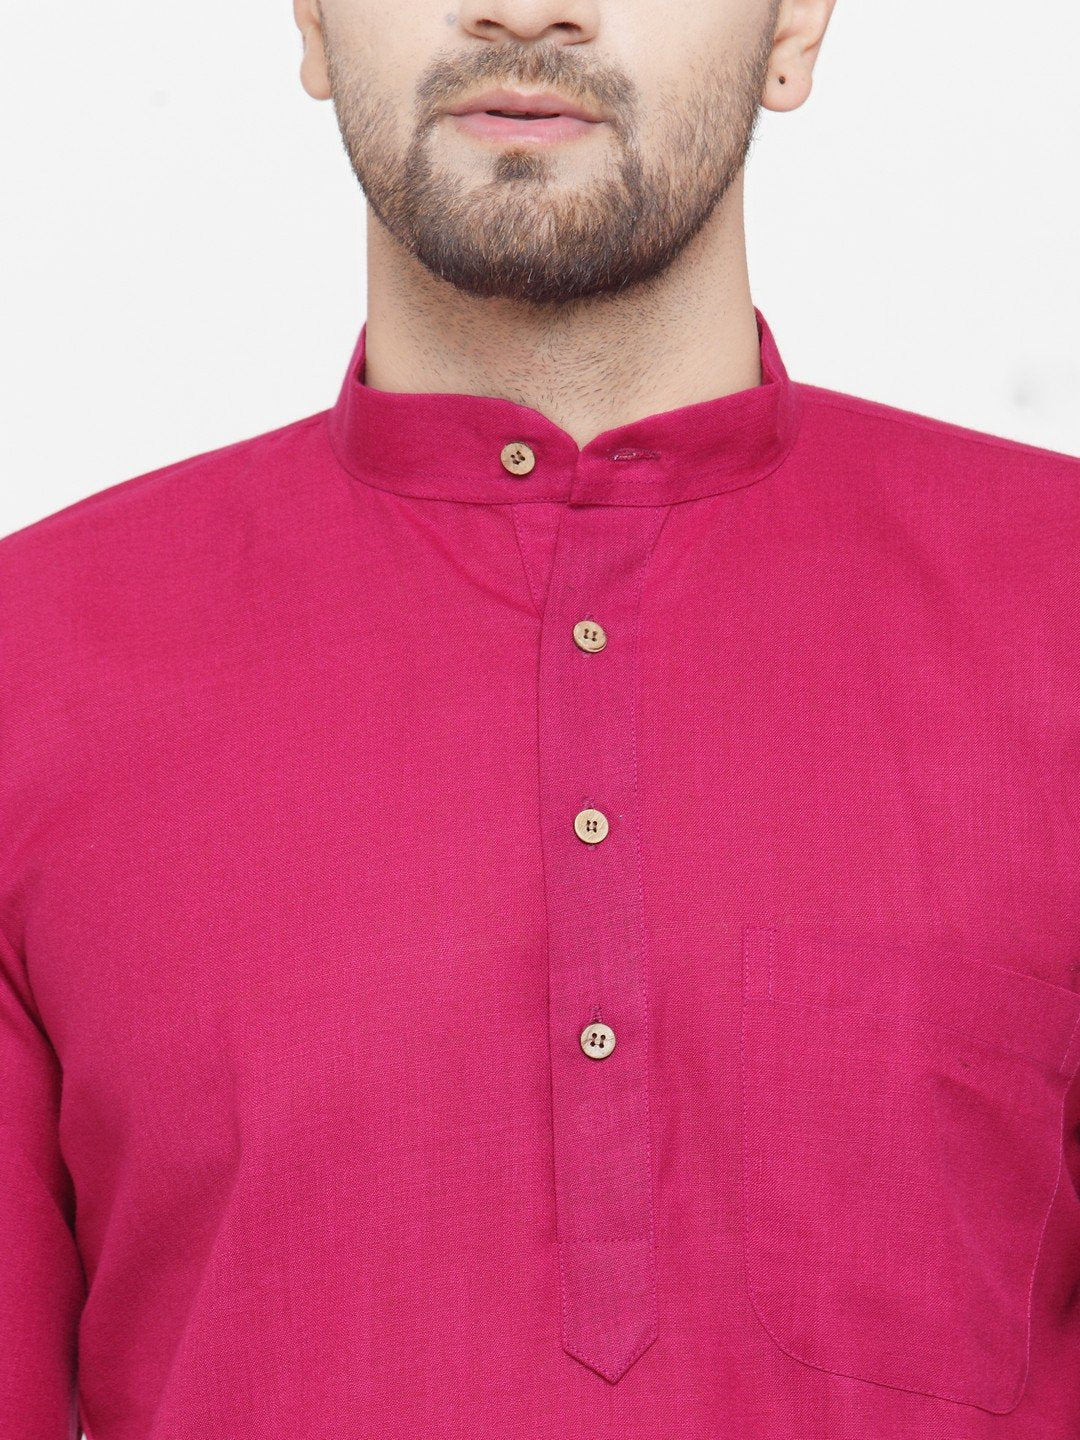 Men's Pink & White Solid Kurta with Churidar ( JOKP 532 Pink ) - Virat Fashions